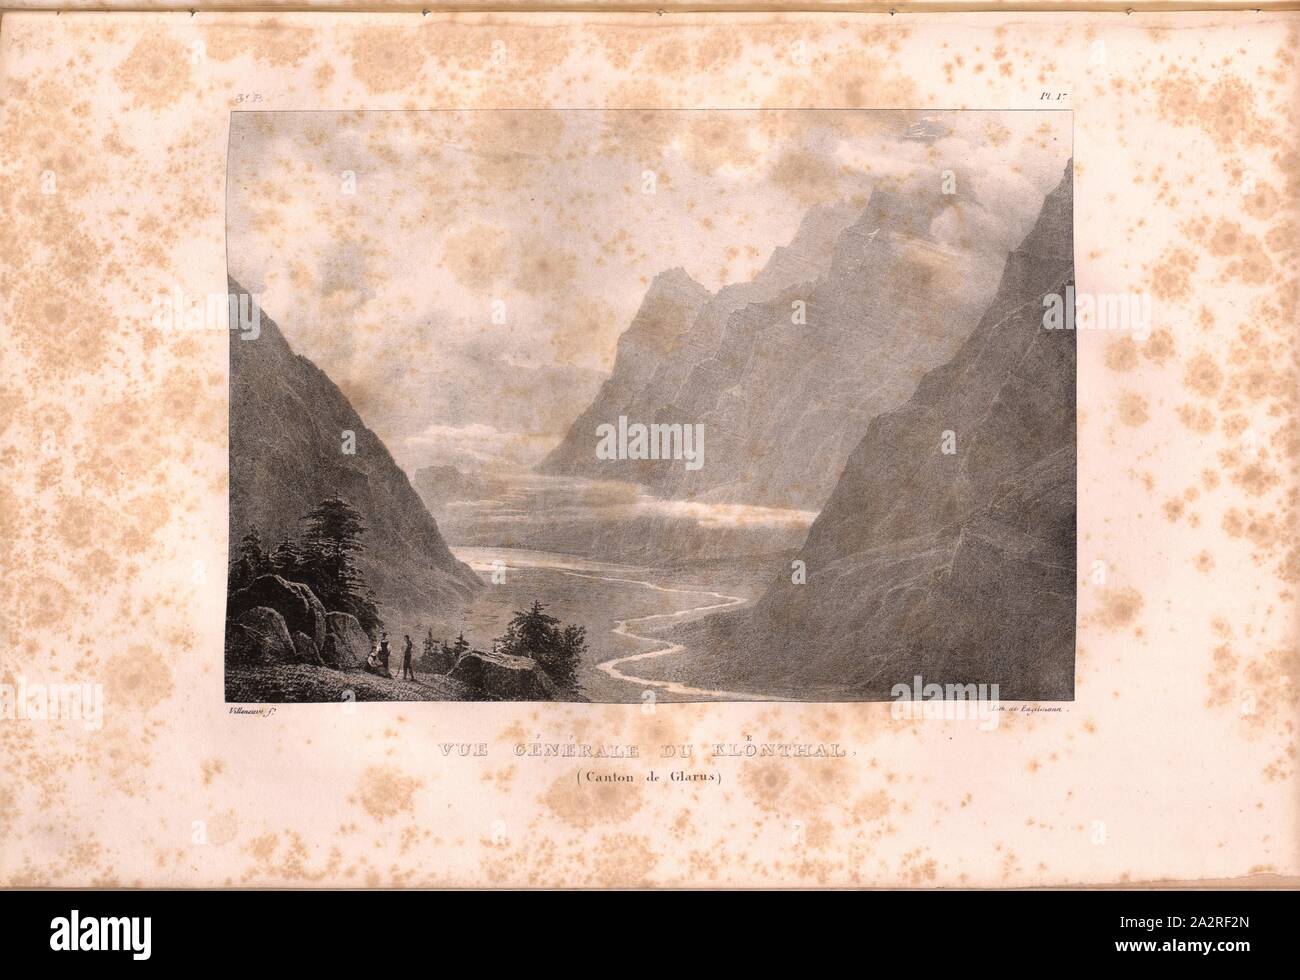 General view of Kloenthal, Klöntal, Signed: Villeneuve, Engelmann, lithograph, plate 17 (vol. 1, part 3), Villeneuve, M. (ft.); Engelmann, Godefroy (lith.), 1823, Hilaire Léon Sazerac, Godefroy Engelmann: Lettres sur la Suisse (...). Paris: [s.n.], 1823-1832 Stock Photo